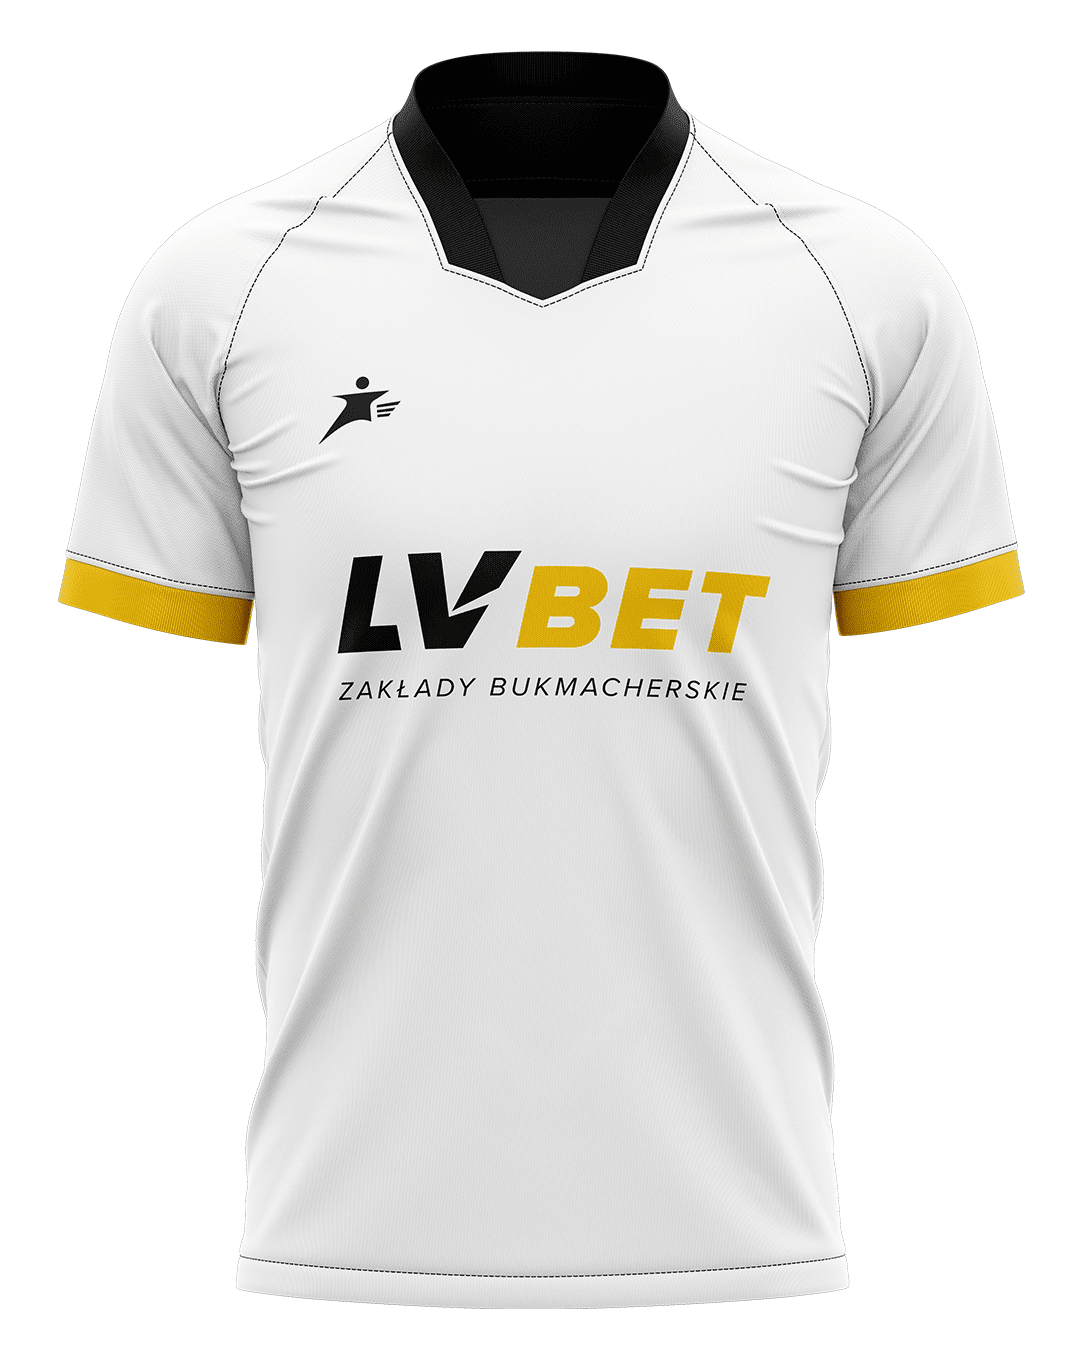 Koszulka LVBET Zakładów Bukmacherskich